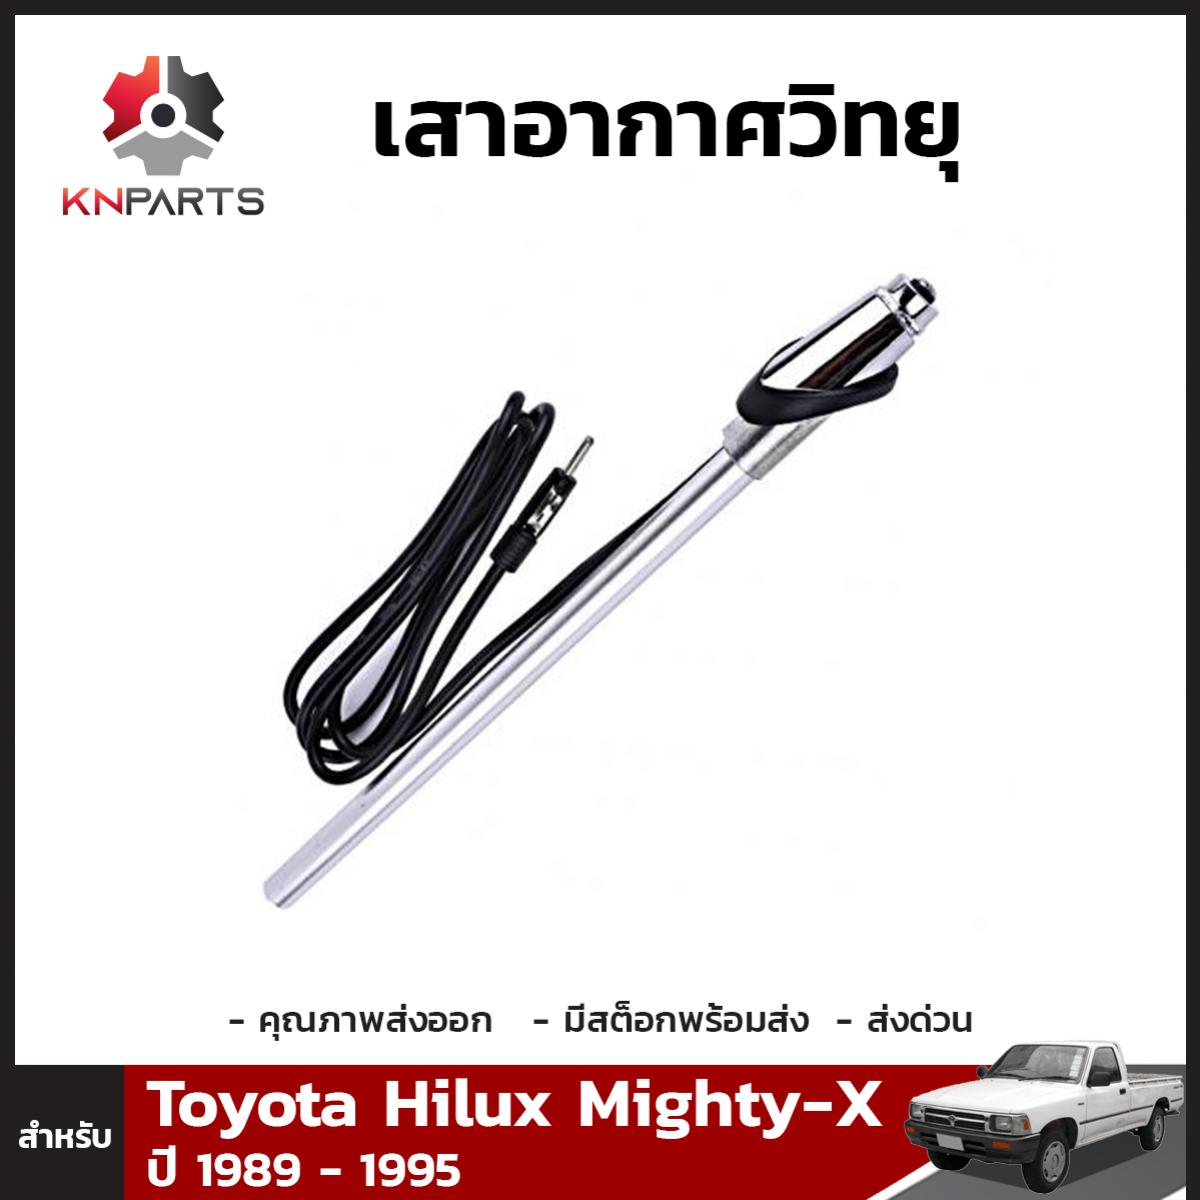 เสาอากาศวิทยุ สำหรับ Toyota Hilux Mighty-X ปี 1989 - 1995